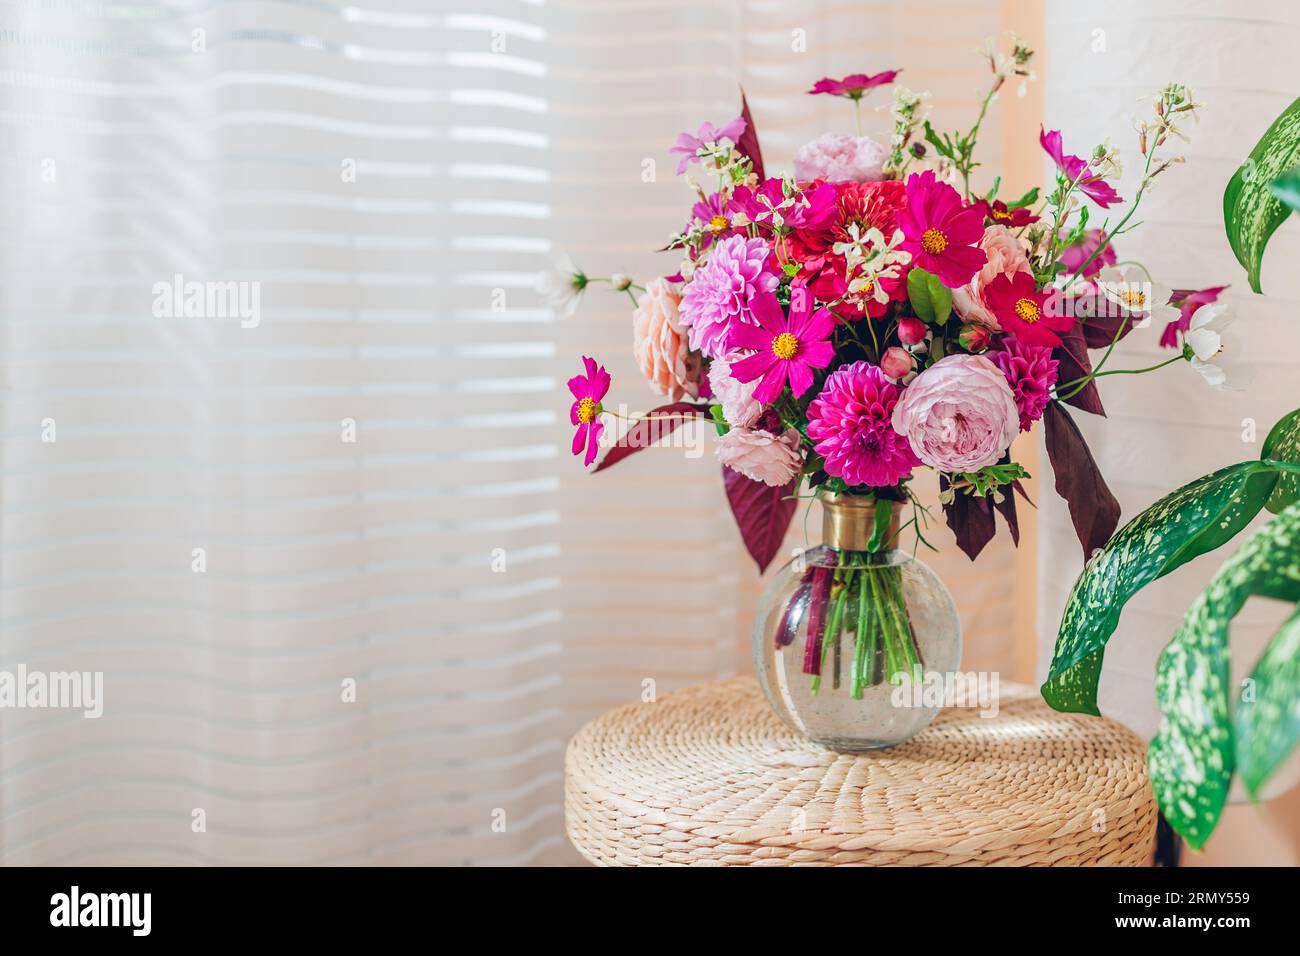 Nahaufnahme des Sommerstraußes von rosa Rosen Dahlien Blumen in Vase auf Strohrattan Korbpad. Inneneinrichtung und Einrichtung zu Hause. Leerzeichen Stockfoto